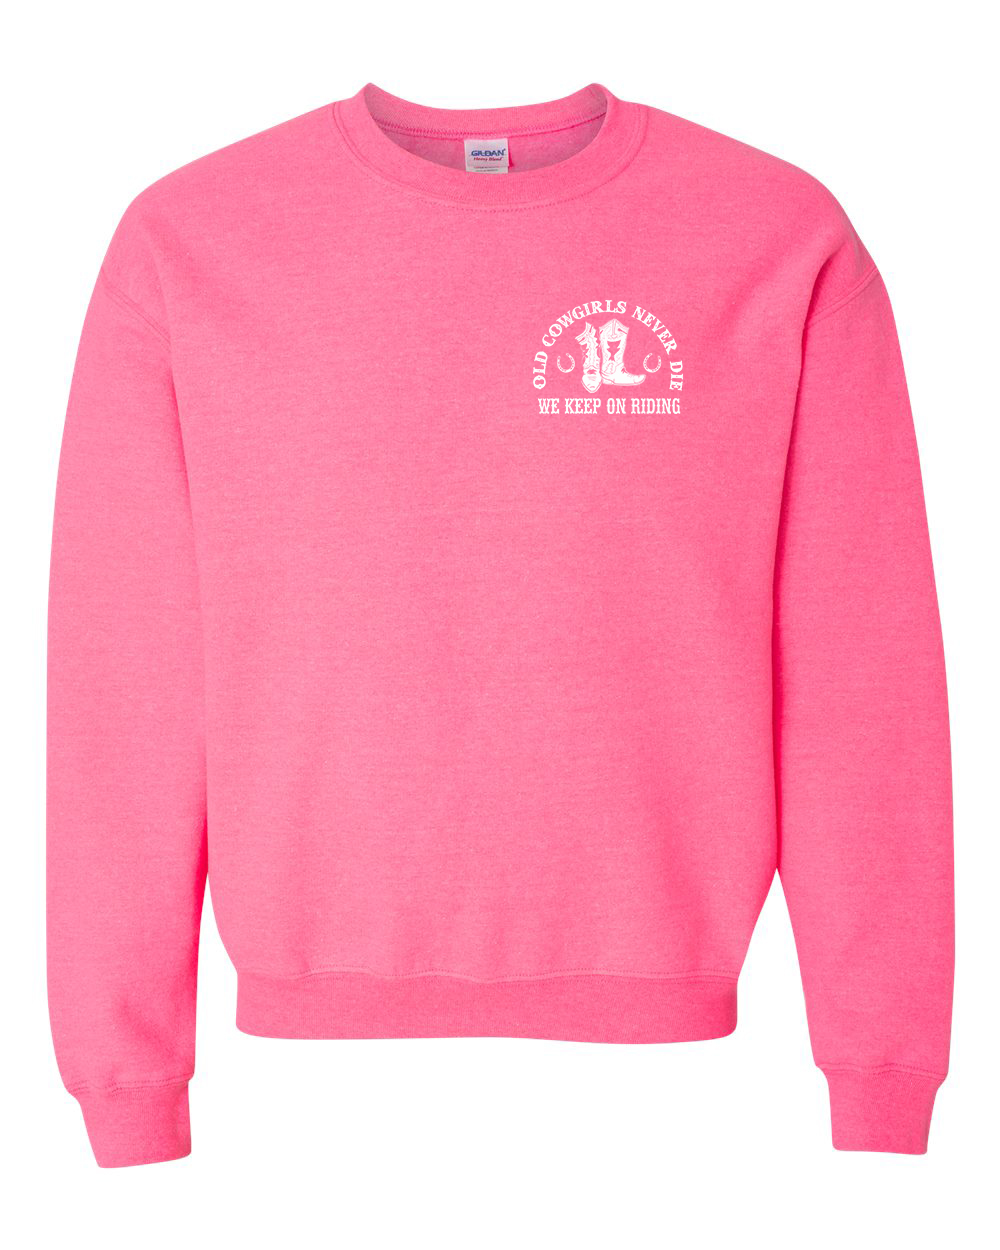 A pink sweatshirt with the words " r. E. D. P. T. O. N ".